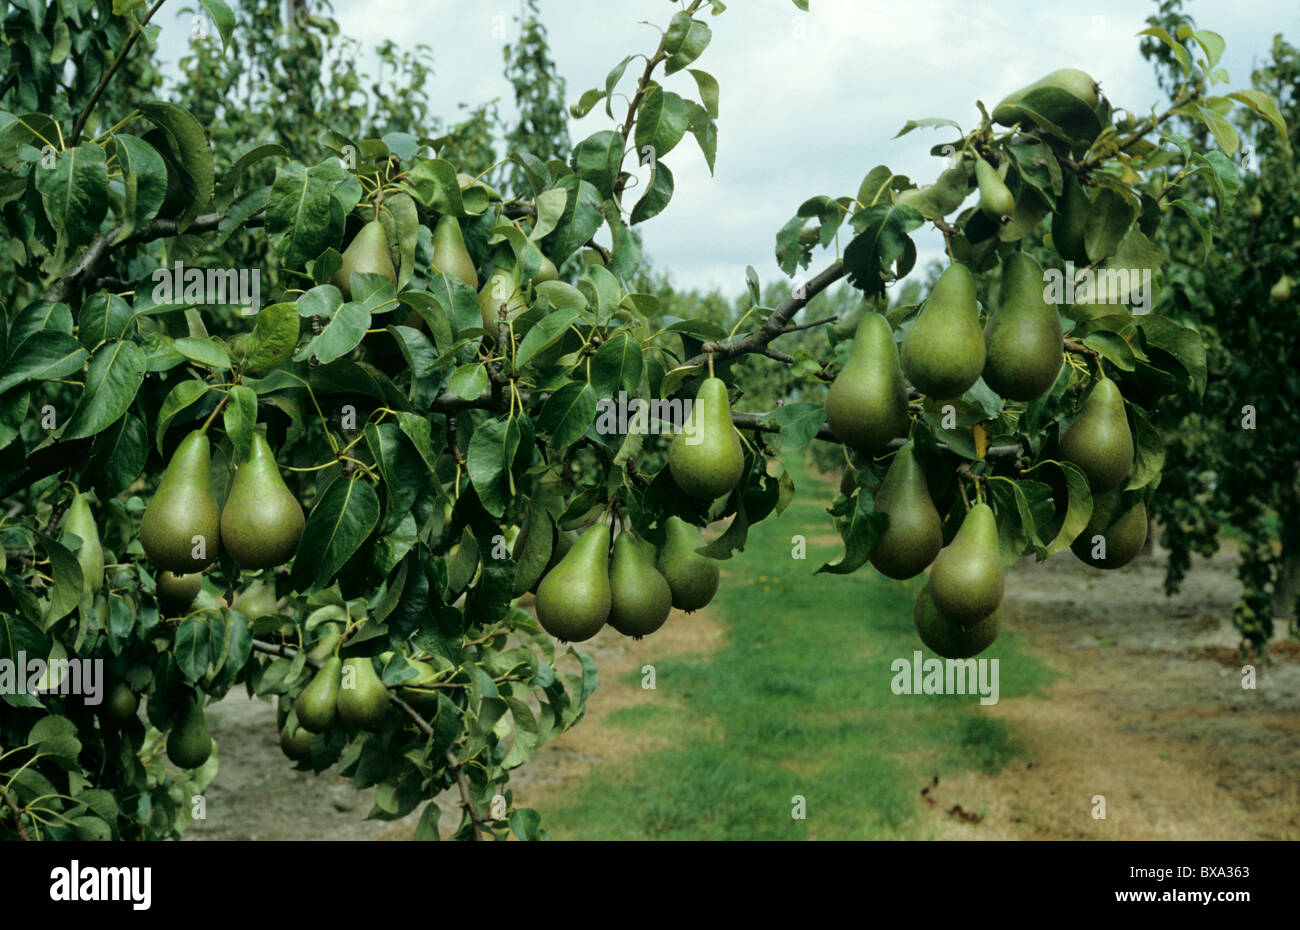 Grosse récolte de poires mûres variété Conférence sur l'arbre Banque D'Images